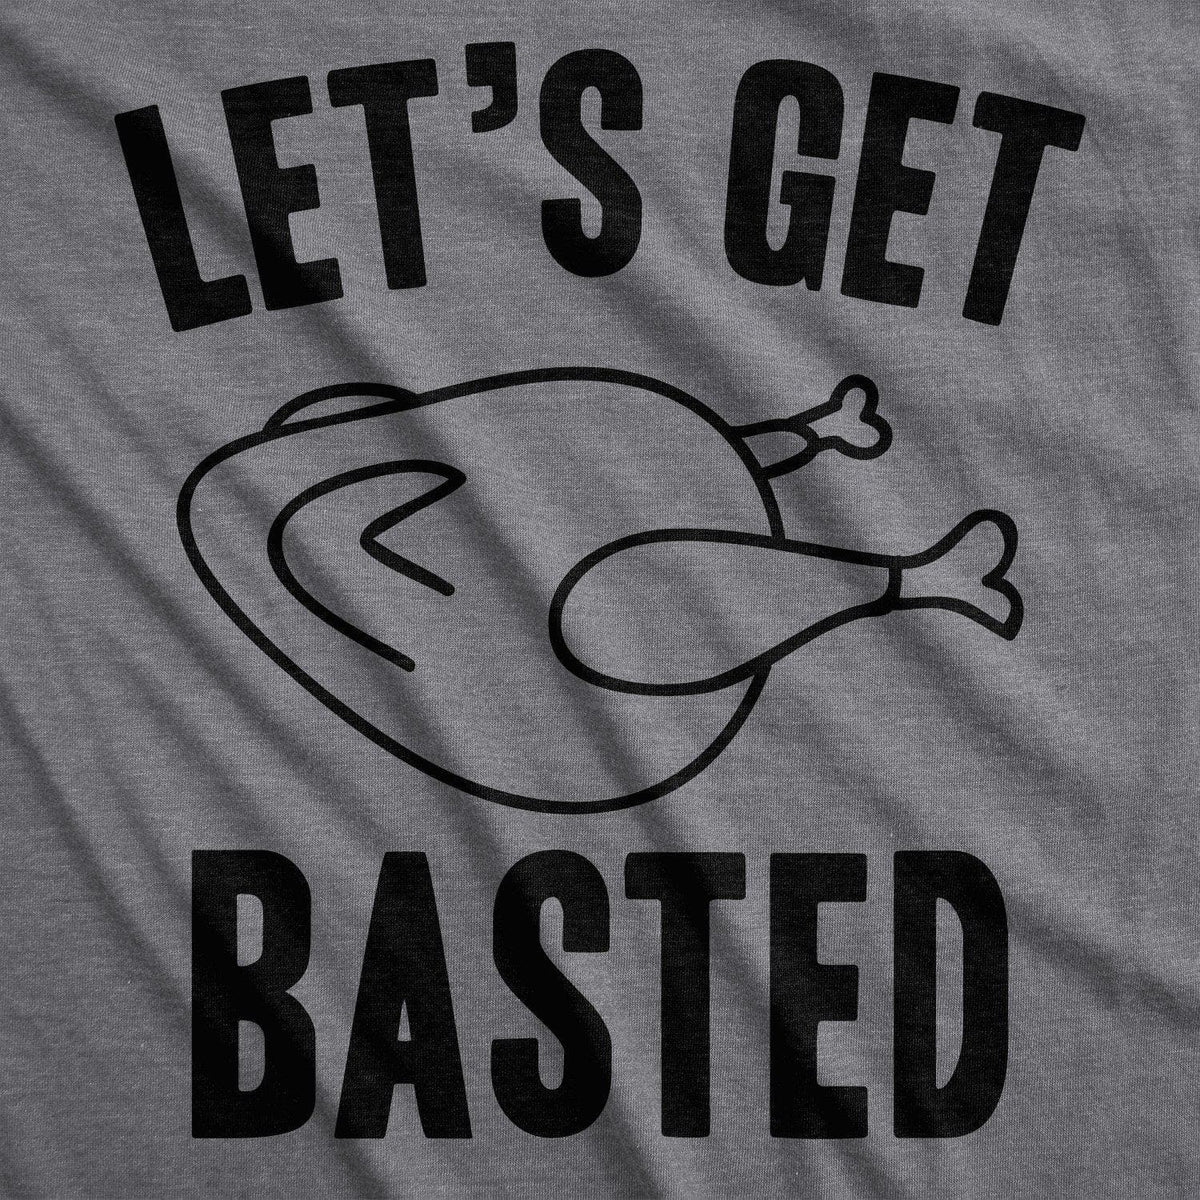 Let&#39;s Get Basted Men&#39;s Tshirt - Crazy Dog T-Shirts